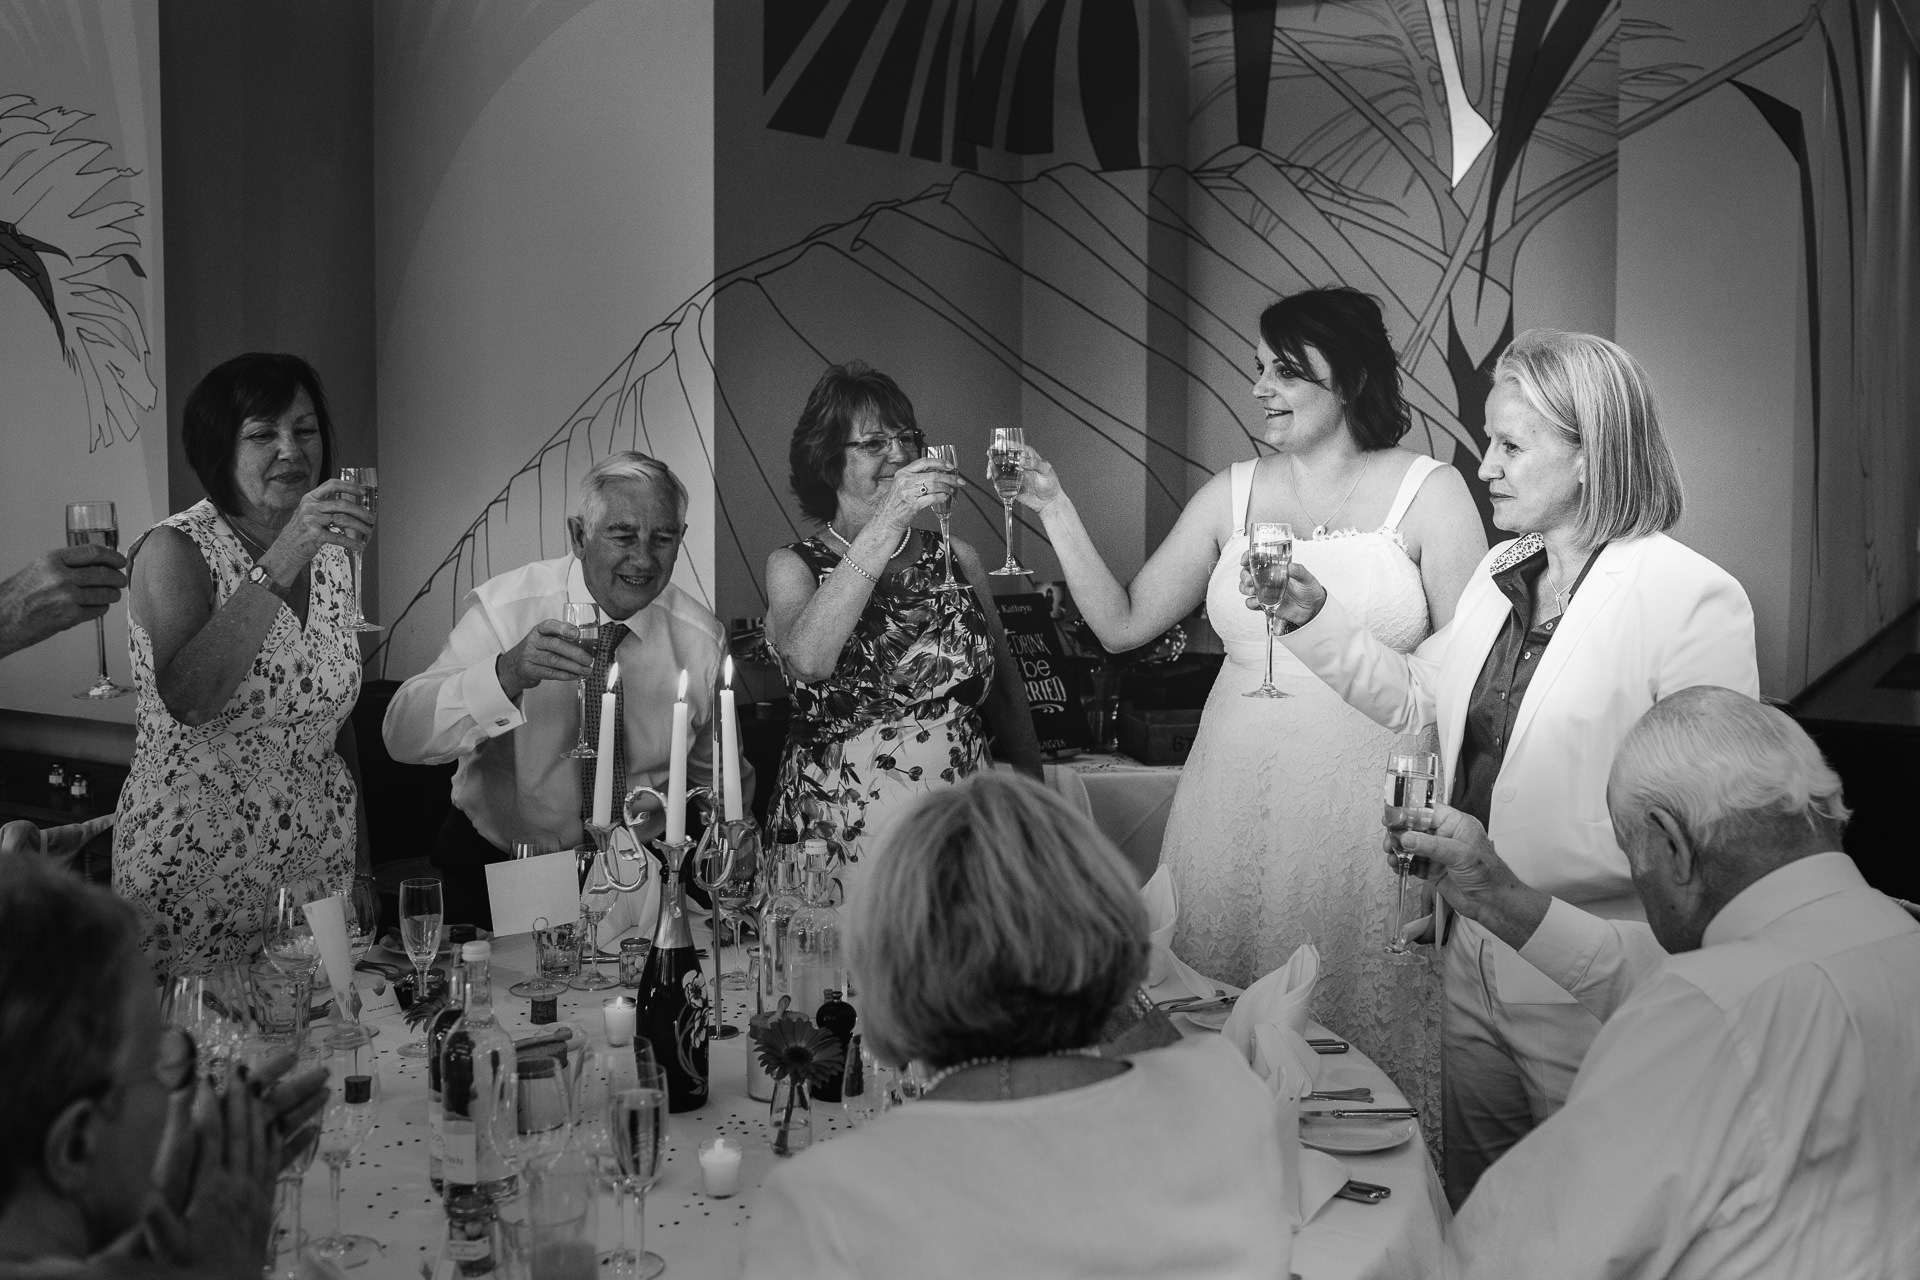 Two brides toasting their wedding